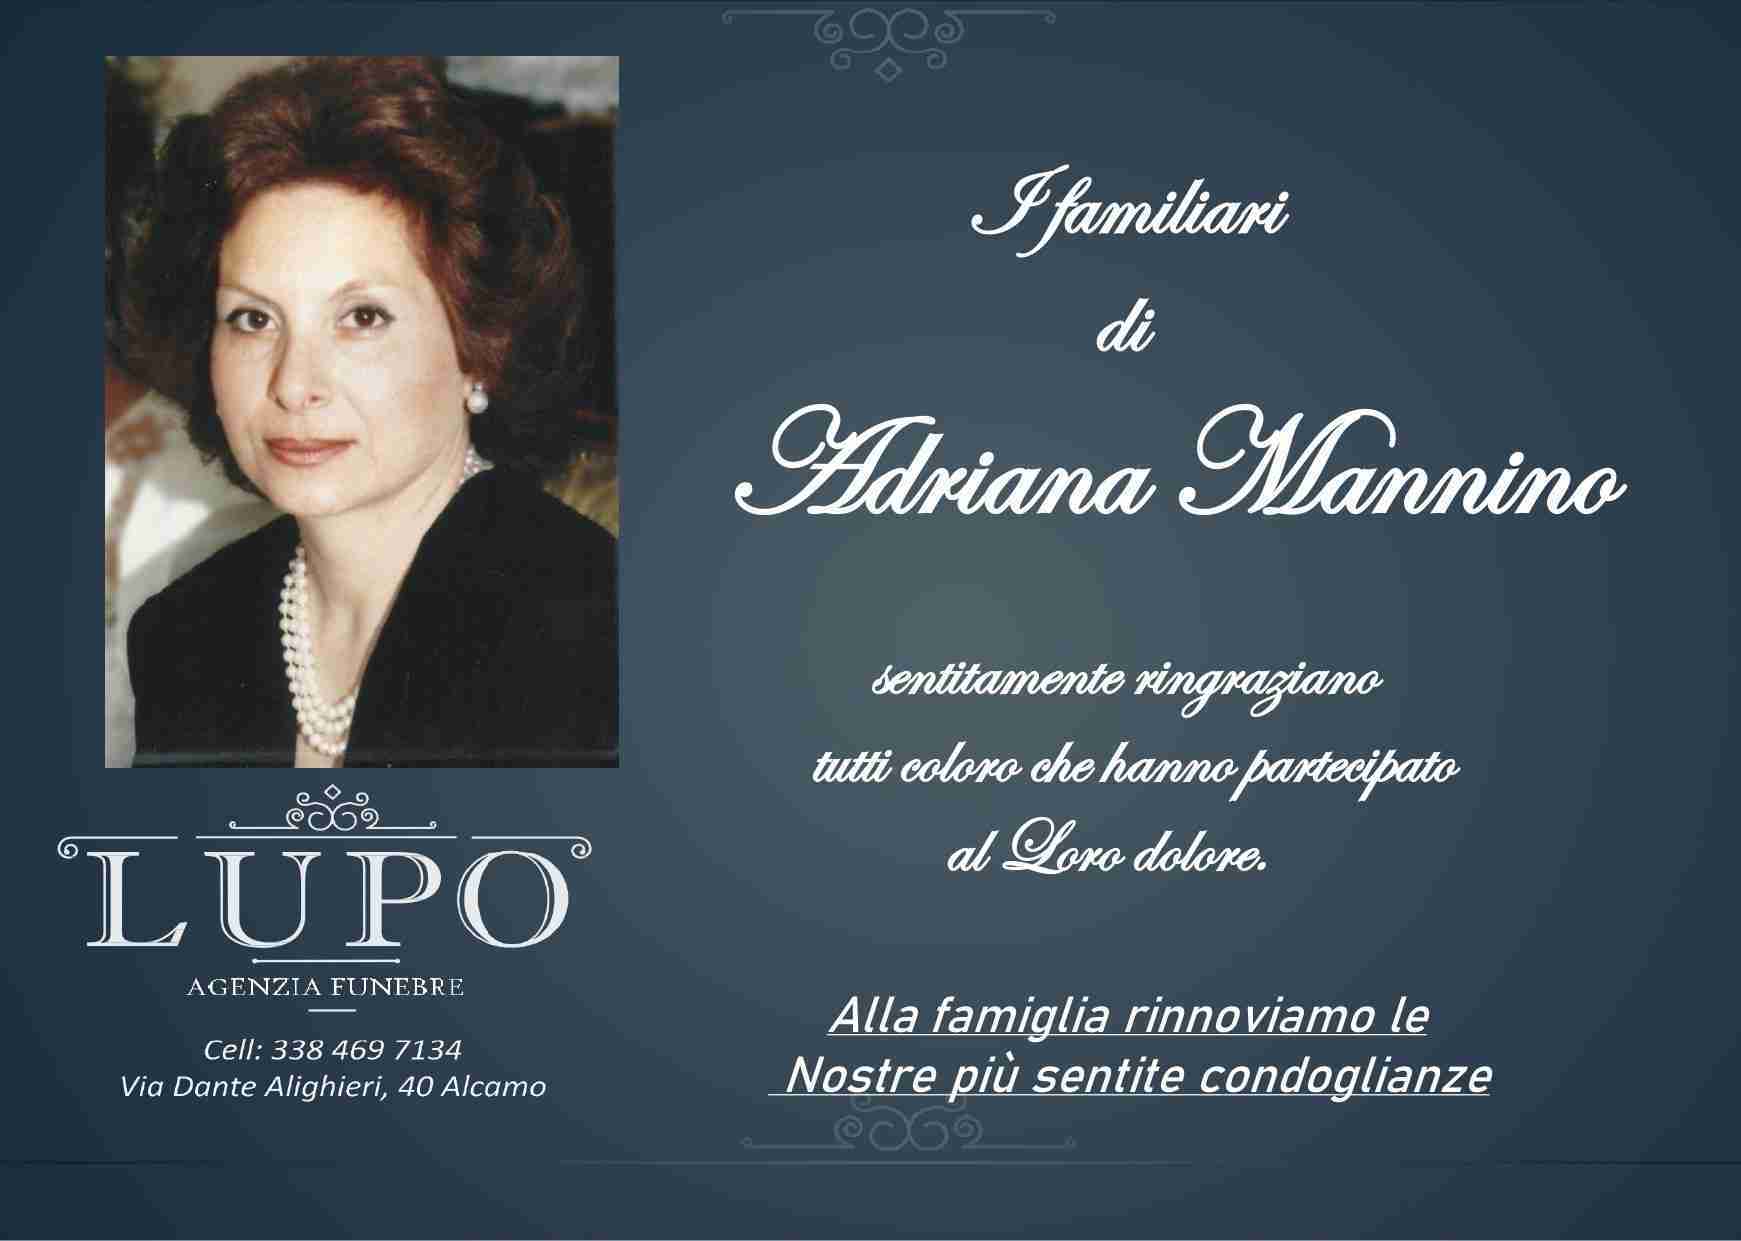 Adriana Mannino